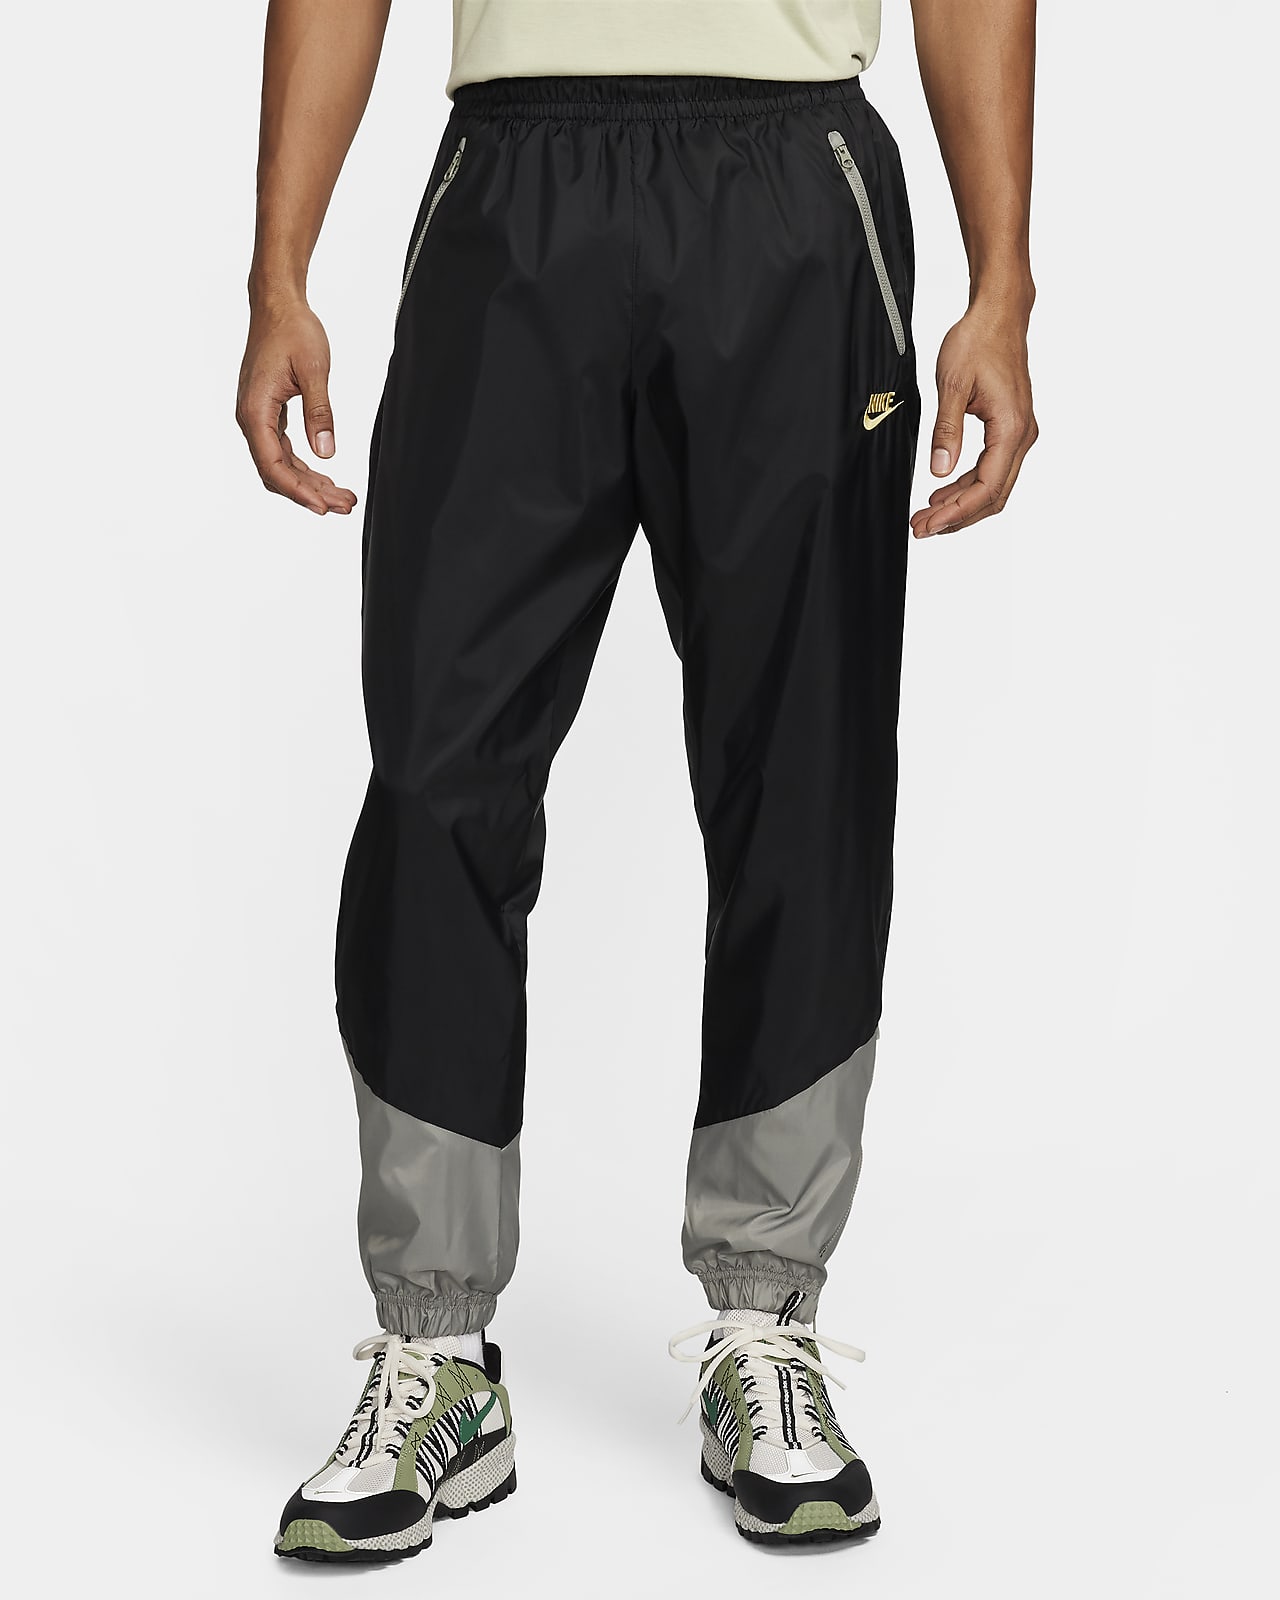 Pantaloni foderati in tessuto Nike Windrunner – Uomo